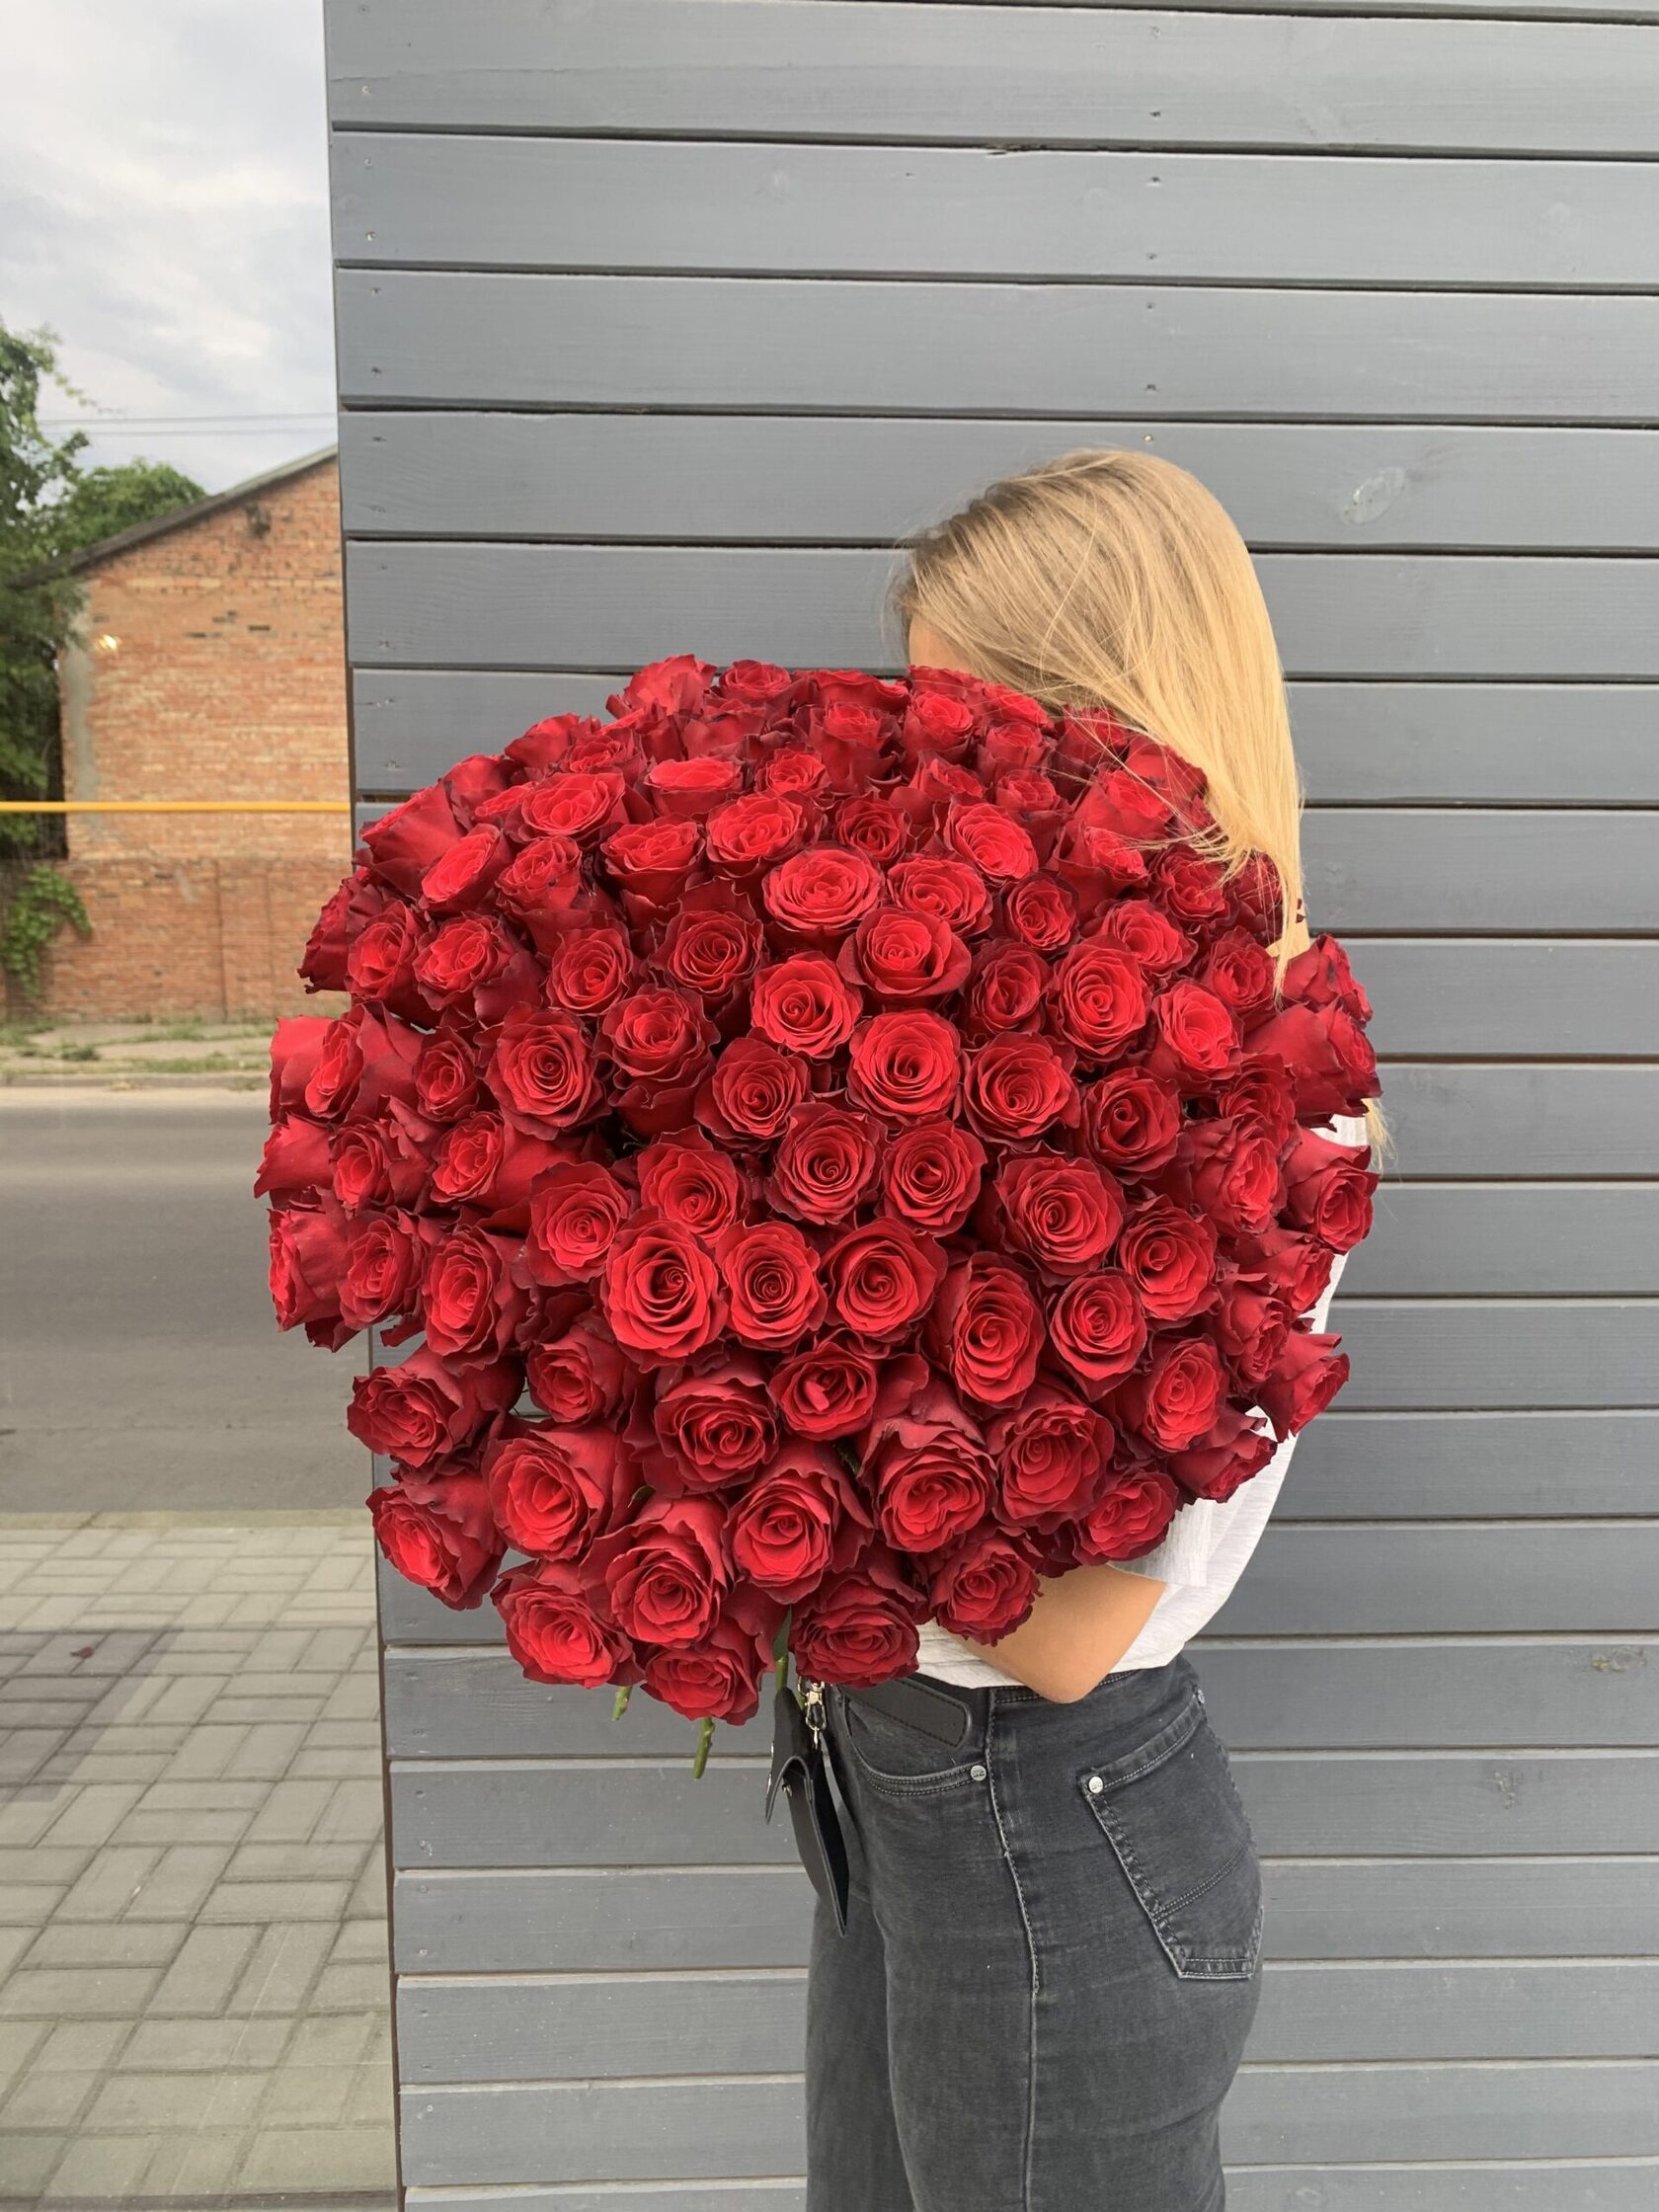 Как выглядит букет из 25 роз в руках фото